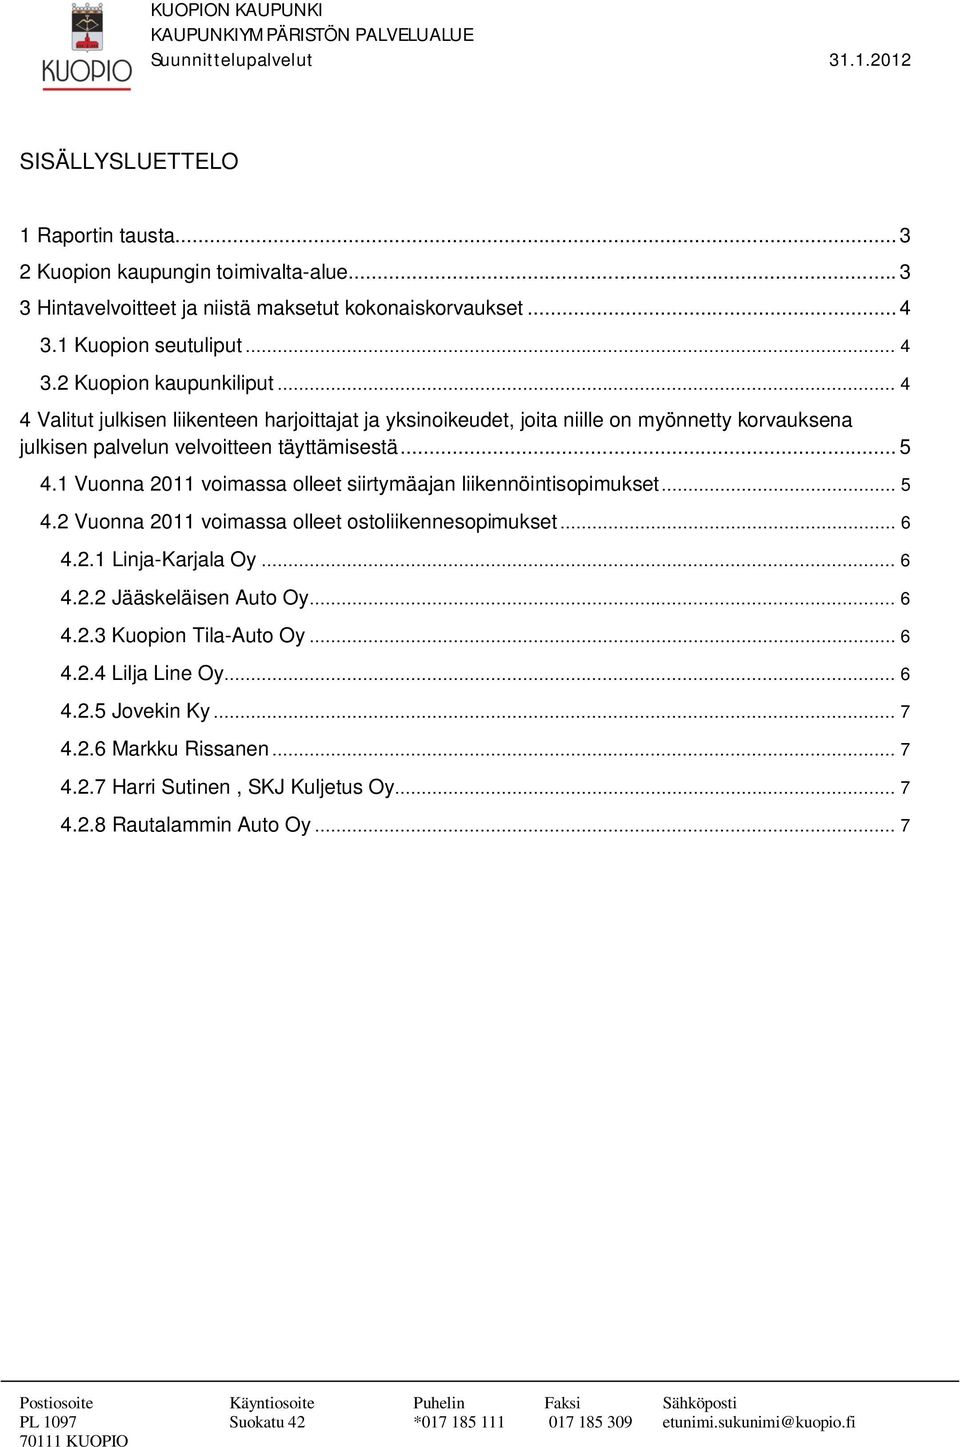 1 Vuonna 2011 voimassa olleet siirtymäajan liikennöintisopimukset... 5 4.2 Vuonna 2011 voimassa olleet ostoliikennesopimukset... 6 4.2.1 Linja-Karjala Oy... 6 4.2.2 Jääskeläisen Auto Oy.